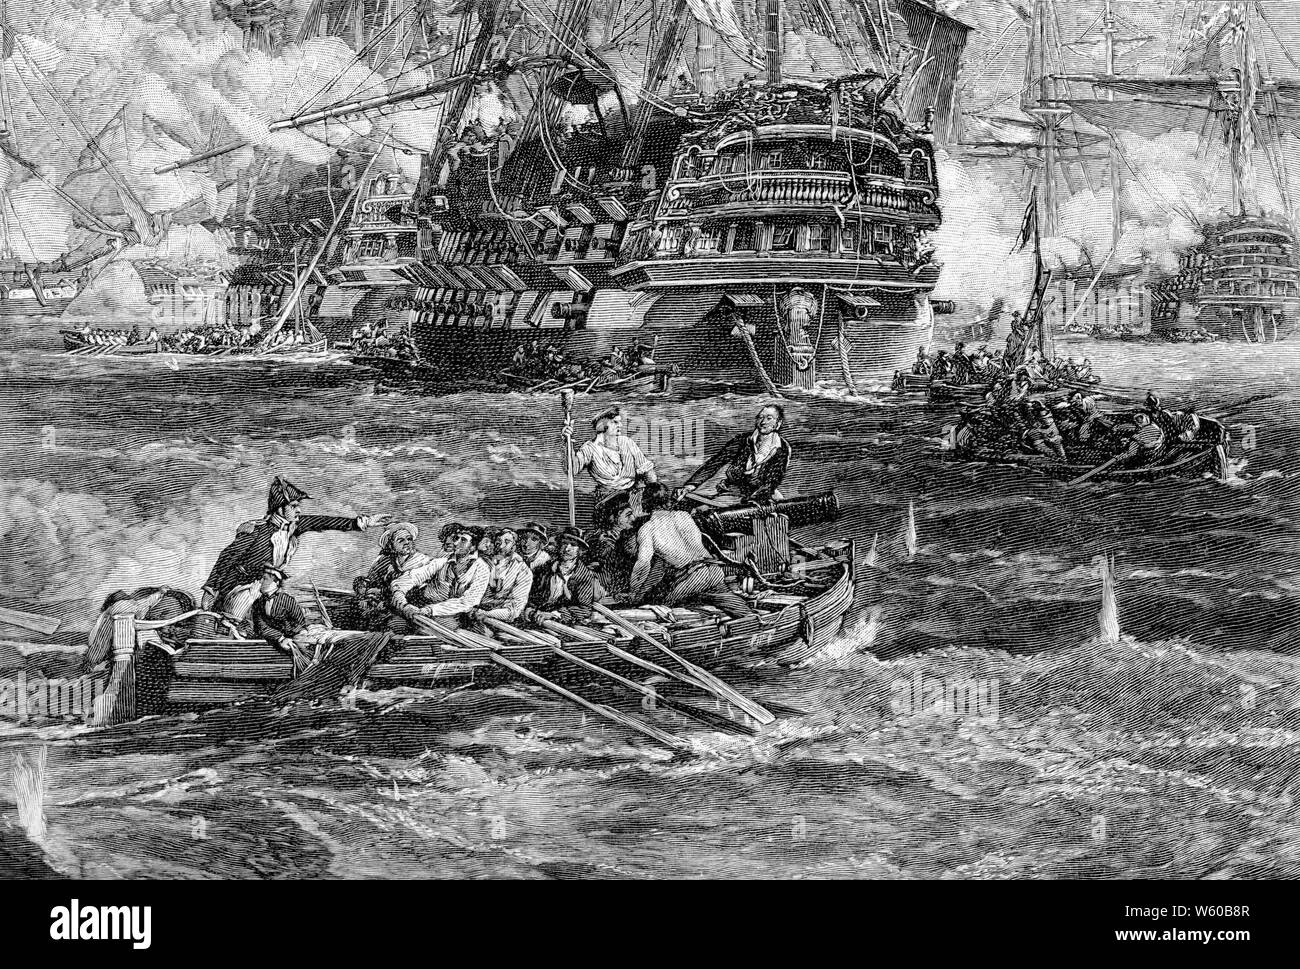 Le bombardement d'Alger par le vicomte Exmouth, 1816. Après George Hyde Chambers (1803-1840). Le bombardement d'Alger, le 27 août 1816, était une tentative par la Grande-Bretagne et les Pays-Bas de mettre fin à l'esclavage les pratiques de Omar Agha, le Dey d'Alger. Une flotte anglo-hollandaise sous le commandement de l'Amiral Lord Exmouth bombarda les navires et la défense du port d'Alger. Banque D'Images